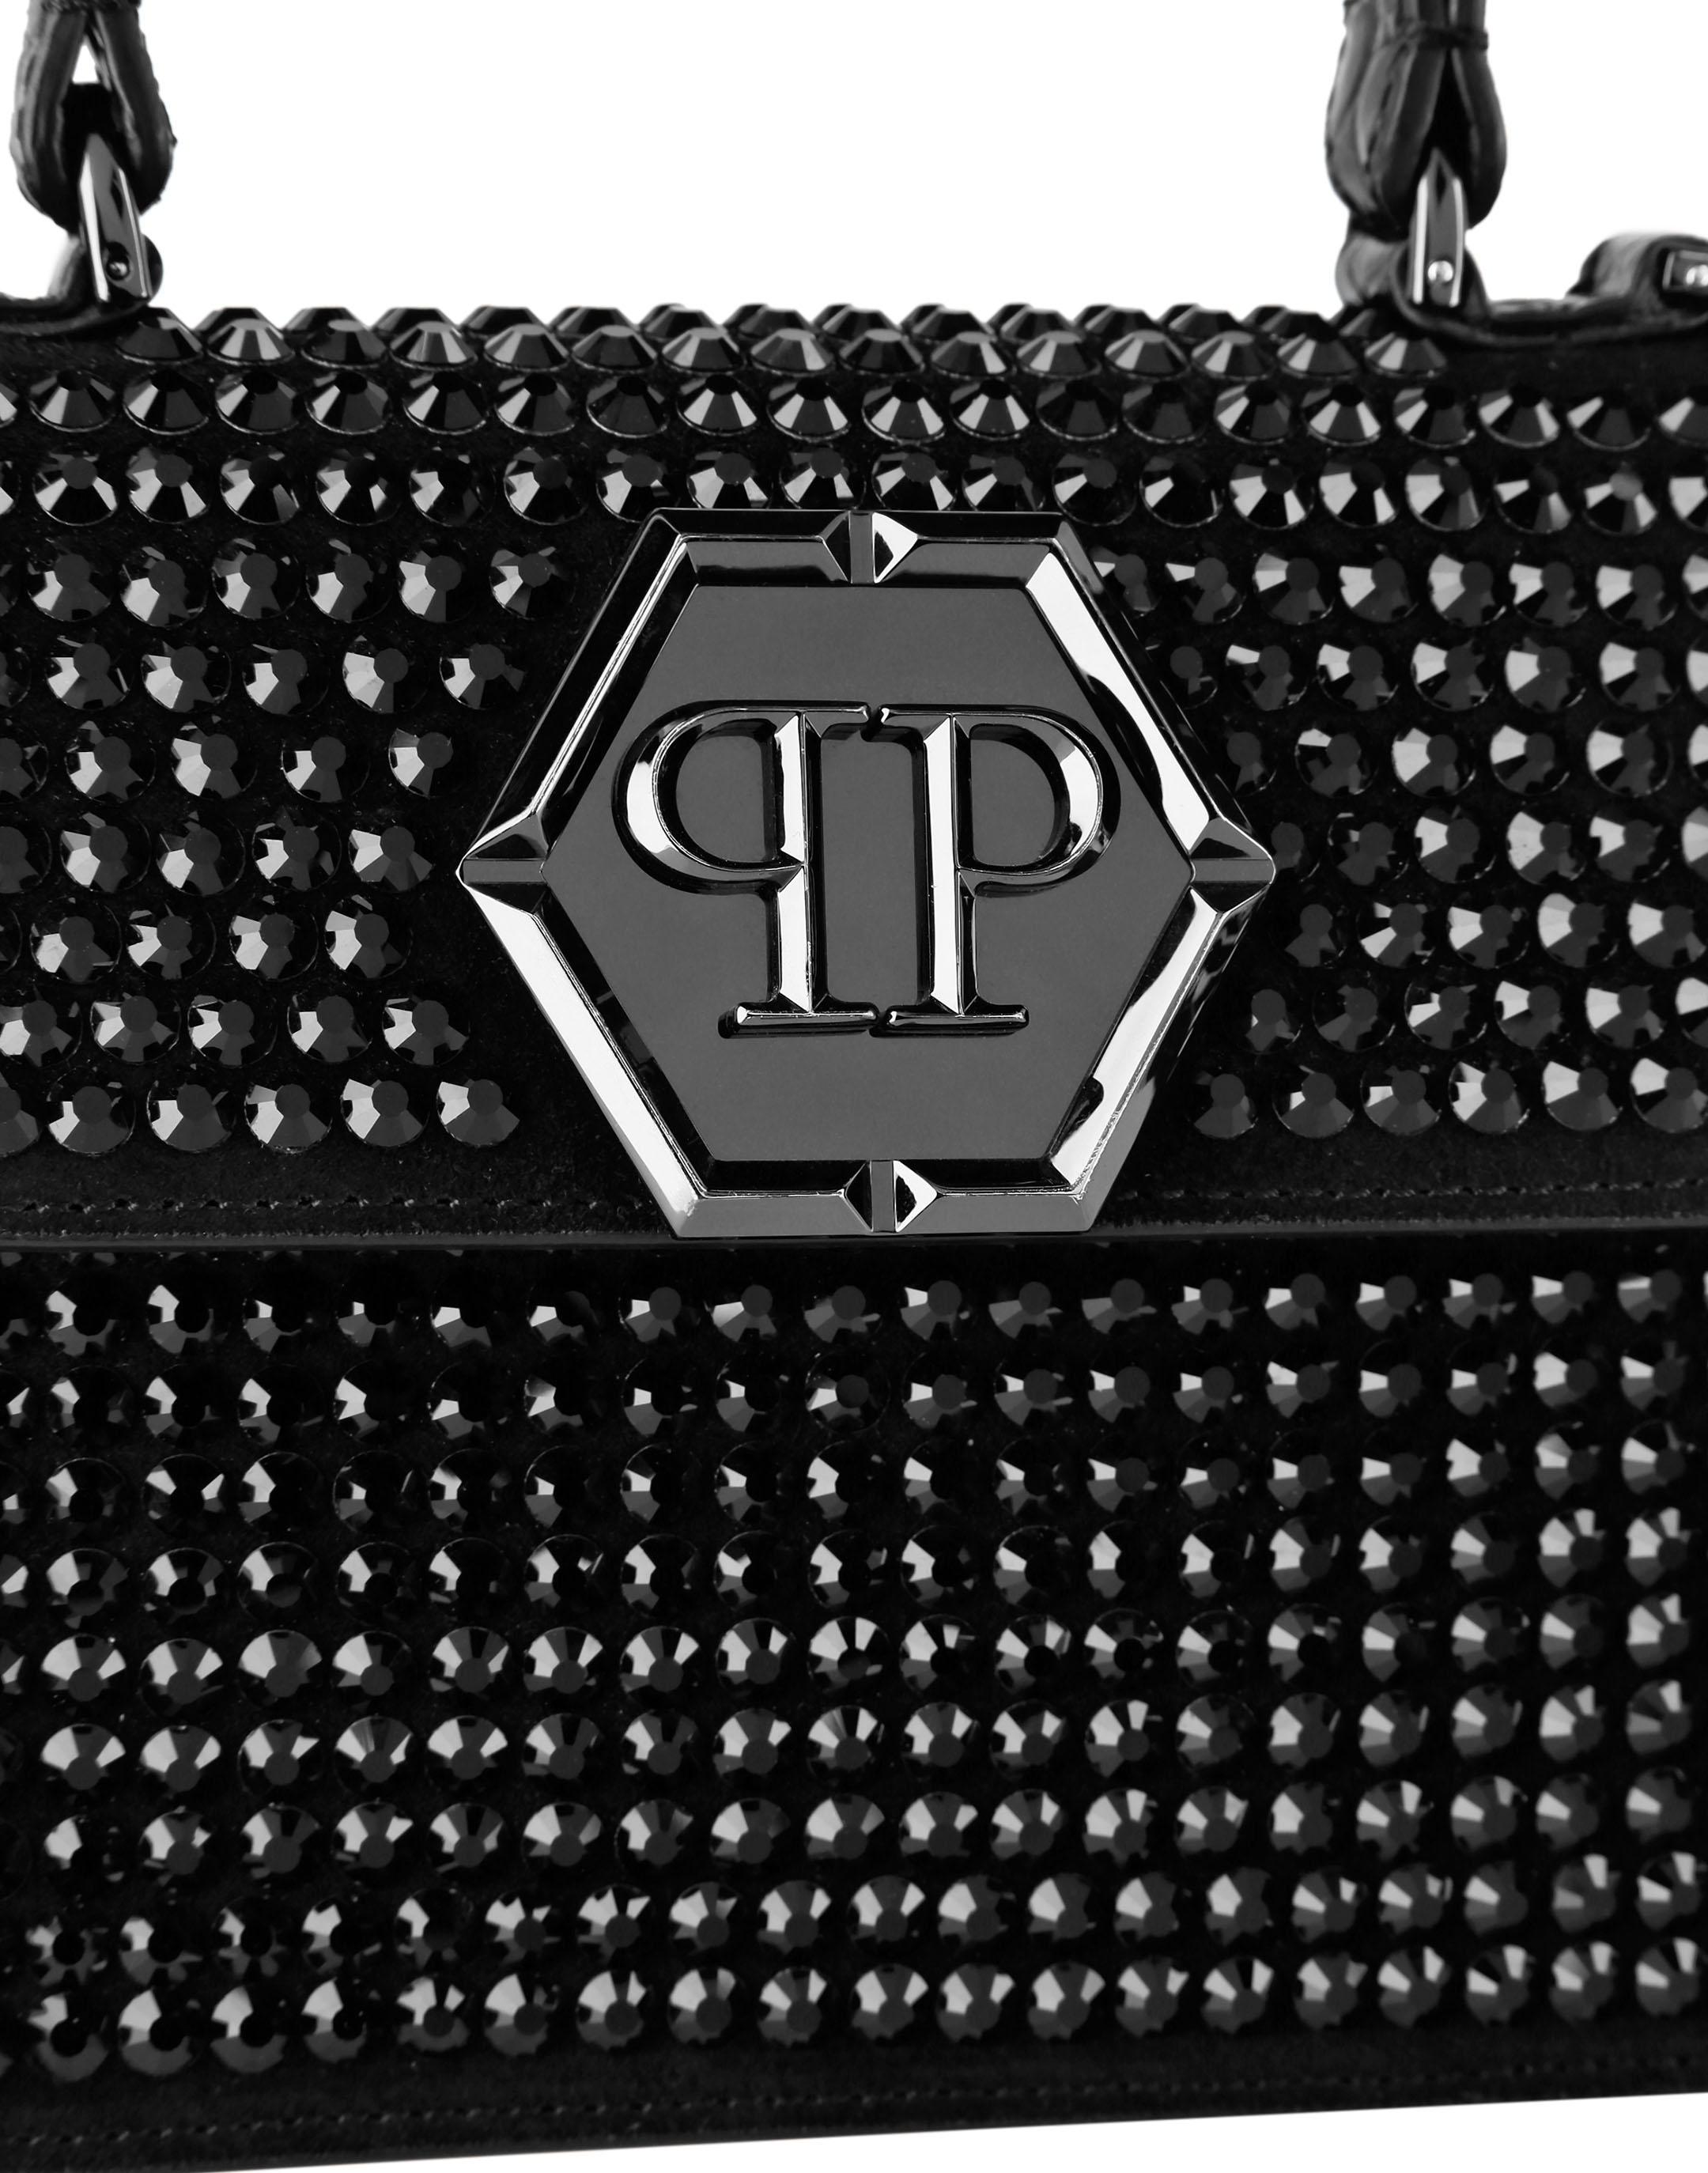 Medium Handbag Superheroine Limited Edition Stud